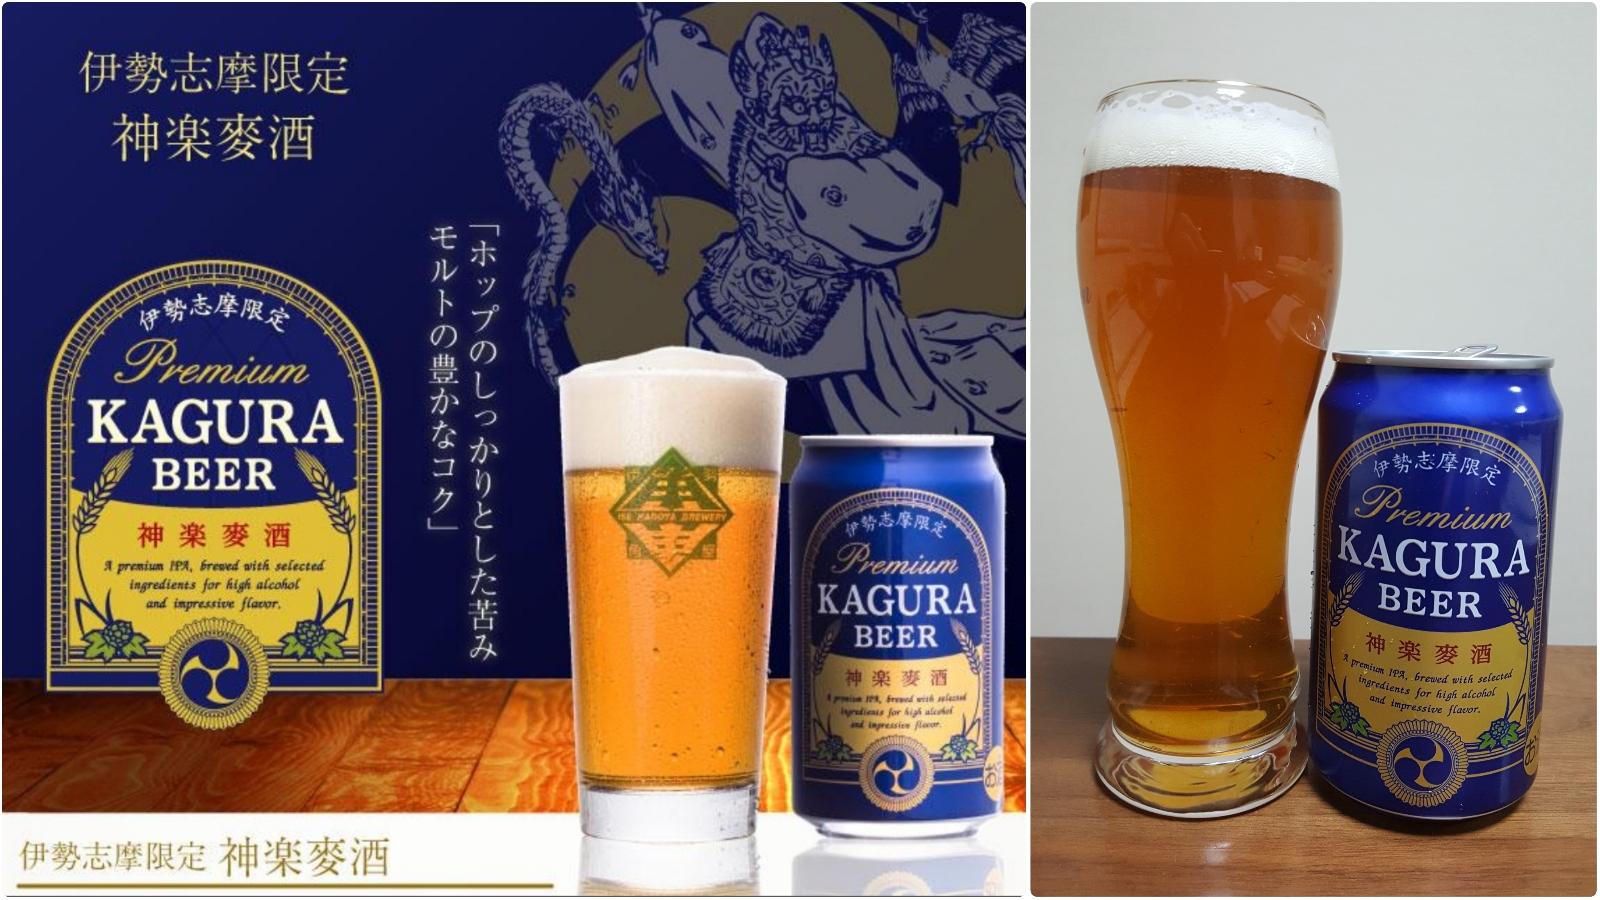 Premium Kagura Beer